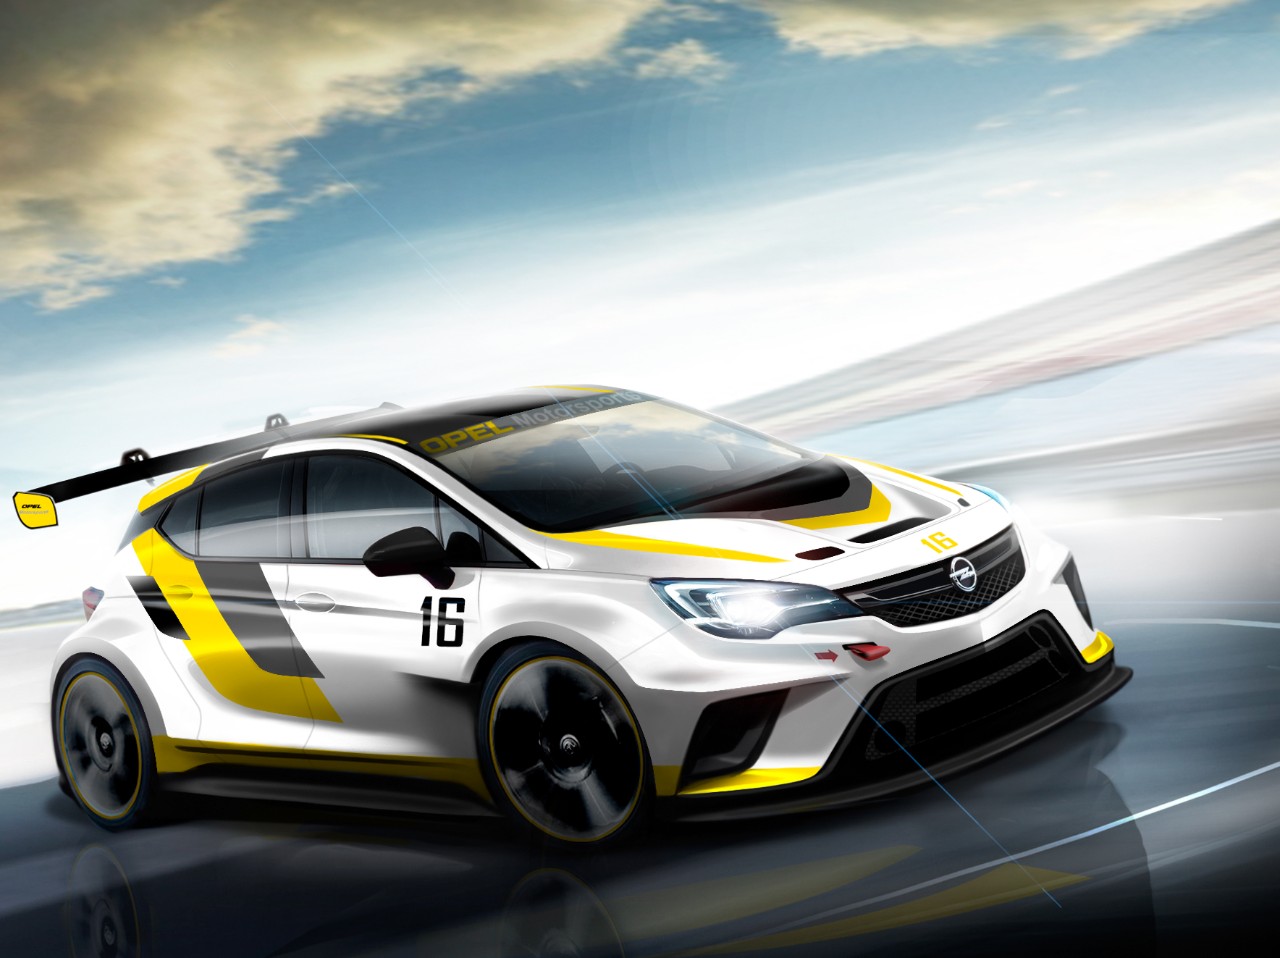 Opel razvija trkački automobil za TCR Internacionalnu seriju 2016.